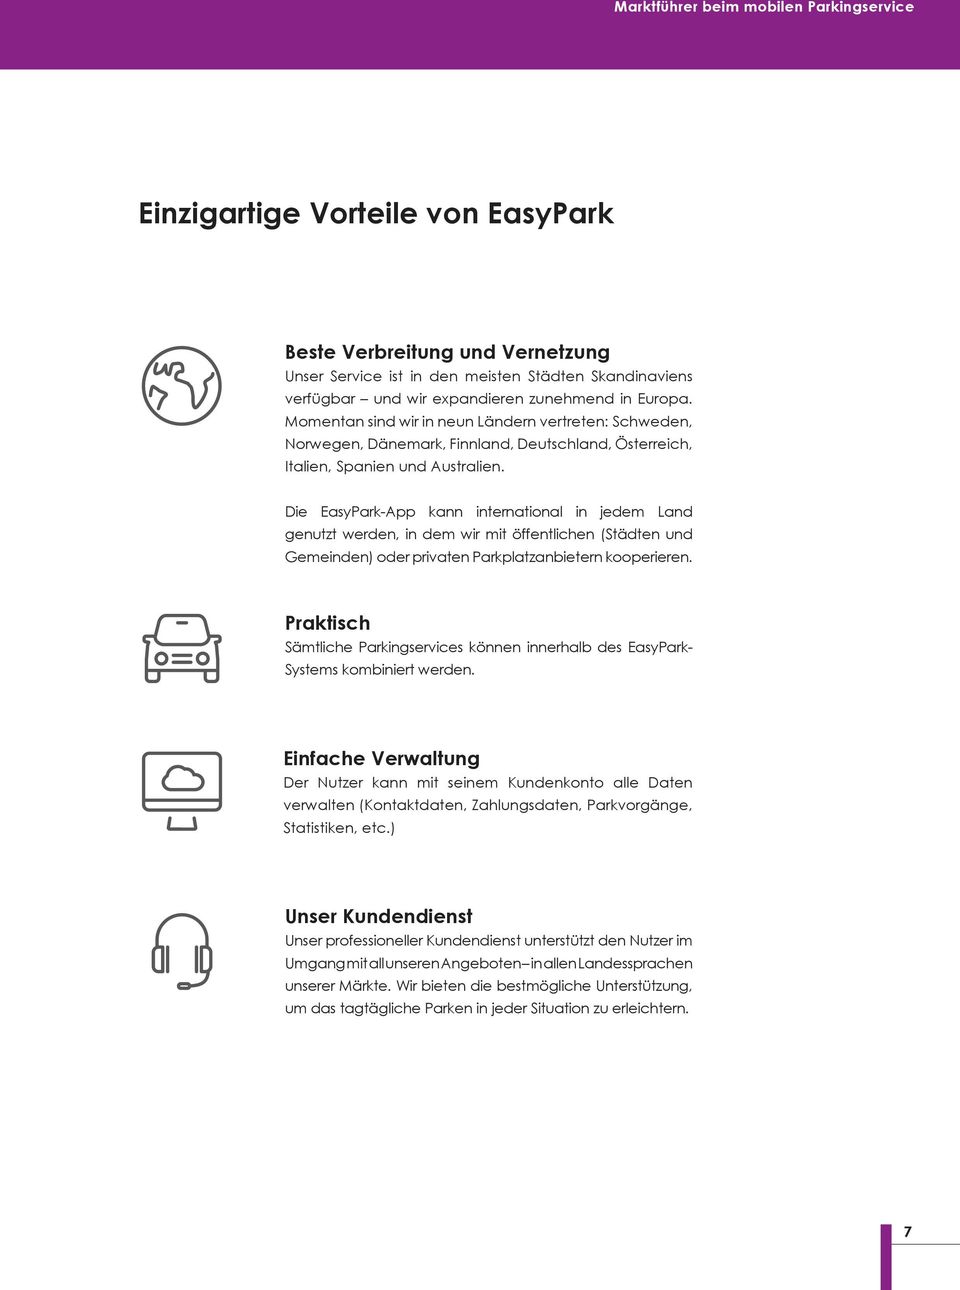 Die EasyPark-App kann international in jedem Land genutzt werden, in dem wir mit öffentlichen (Städten und Gemeinden) oder privaten Parkplatzanbietern kooperieren.